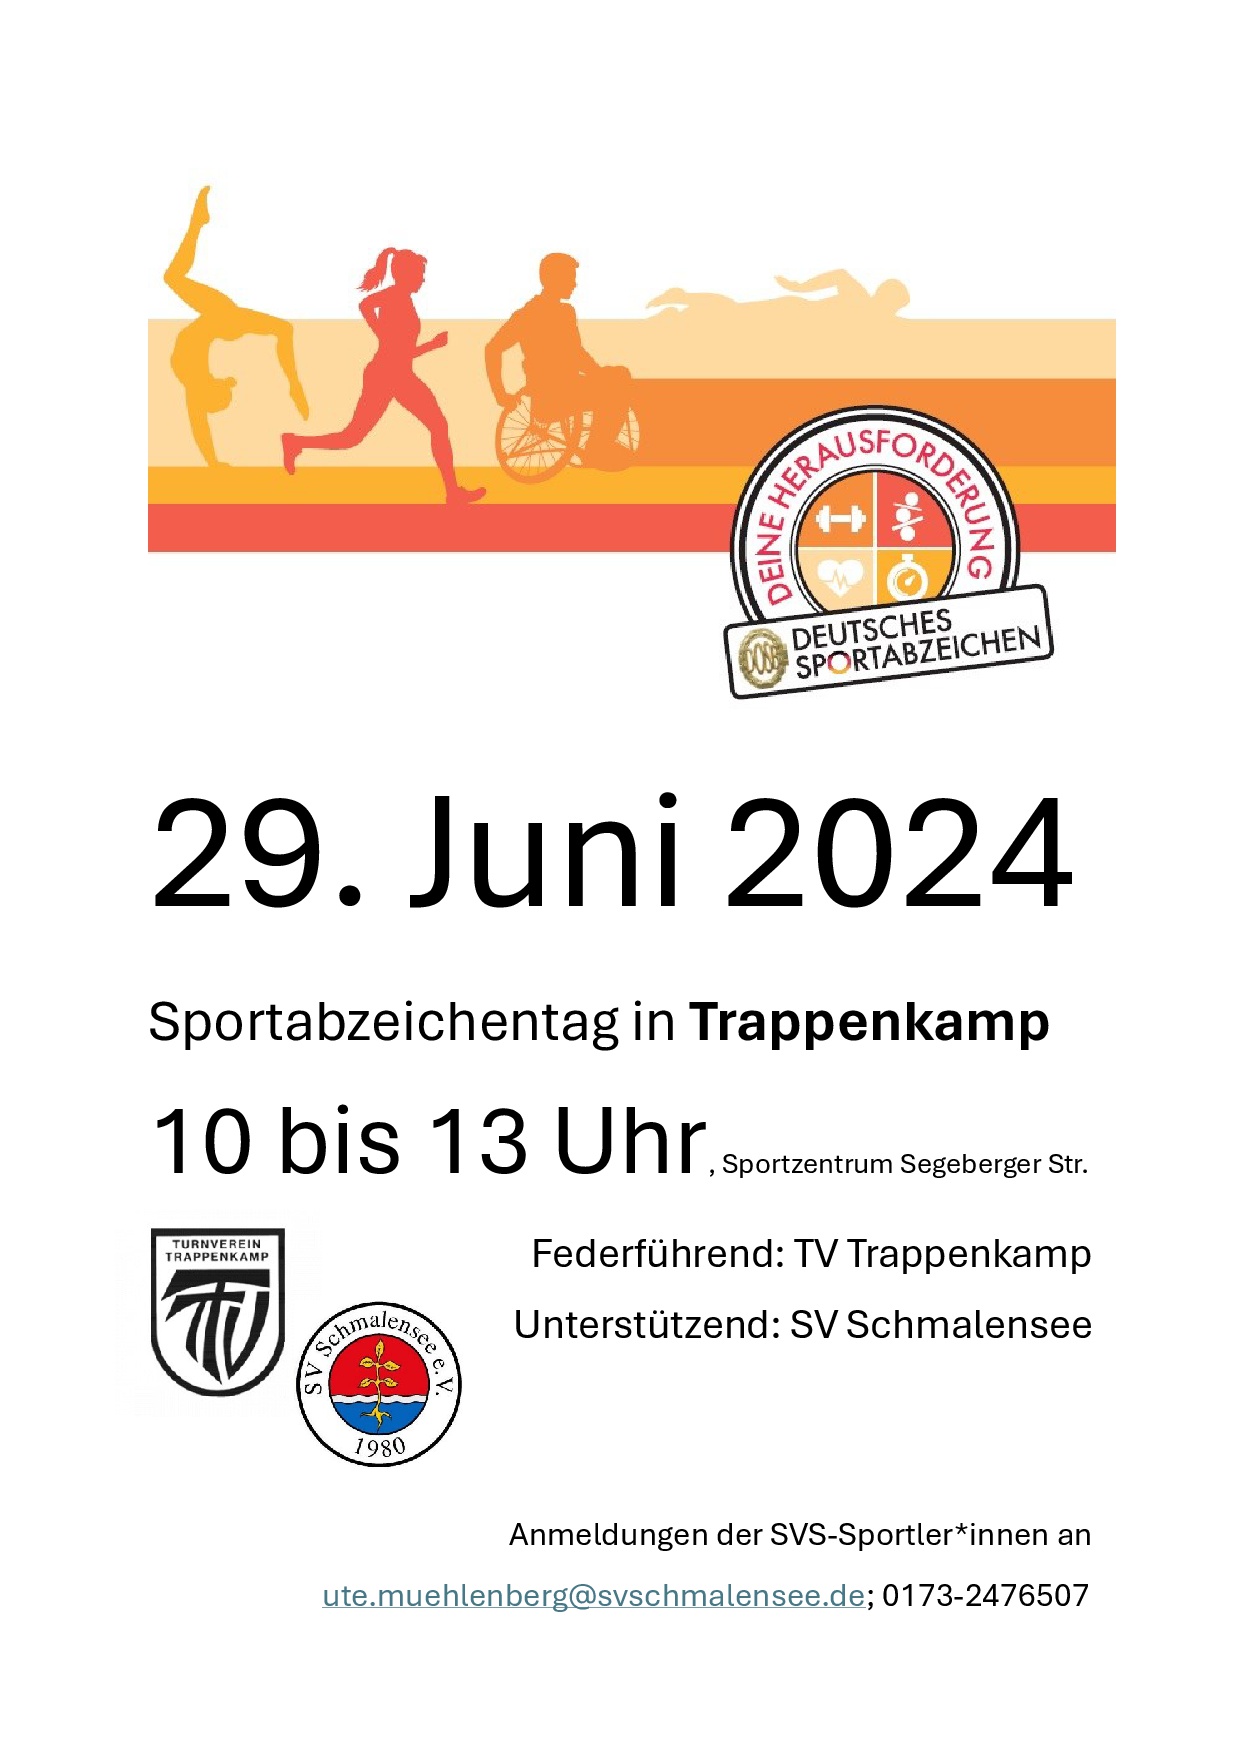 Sportabzeichentag 29. Juni 2024 in Trappenkamp